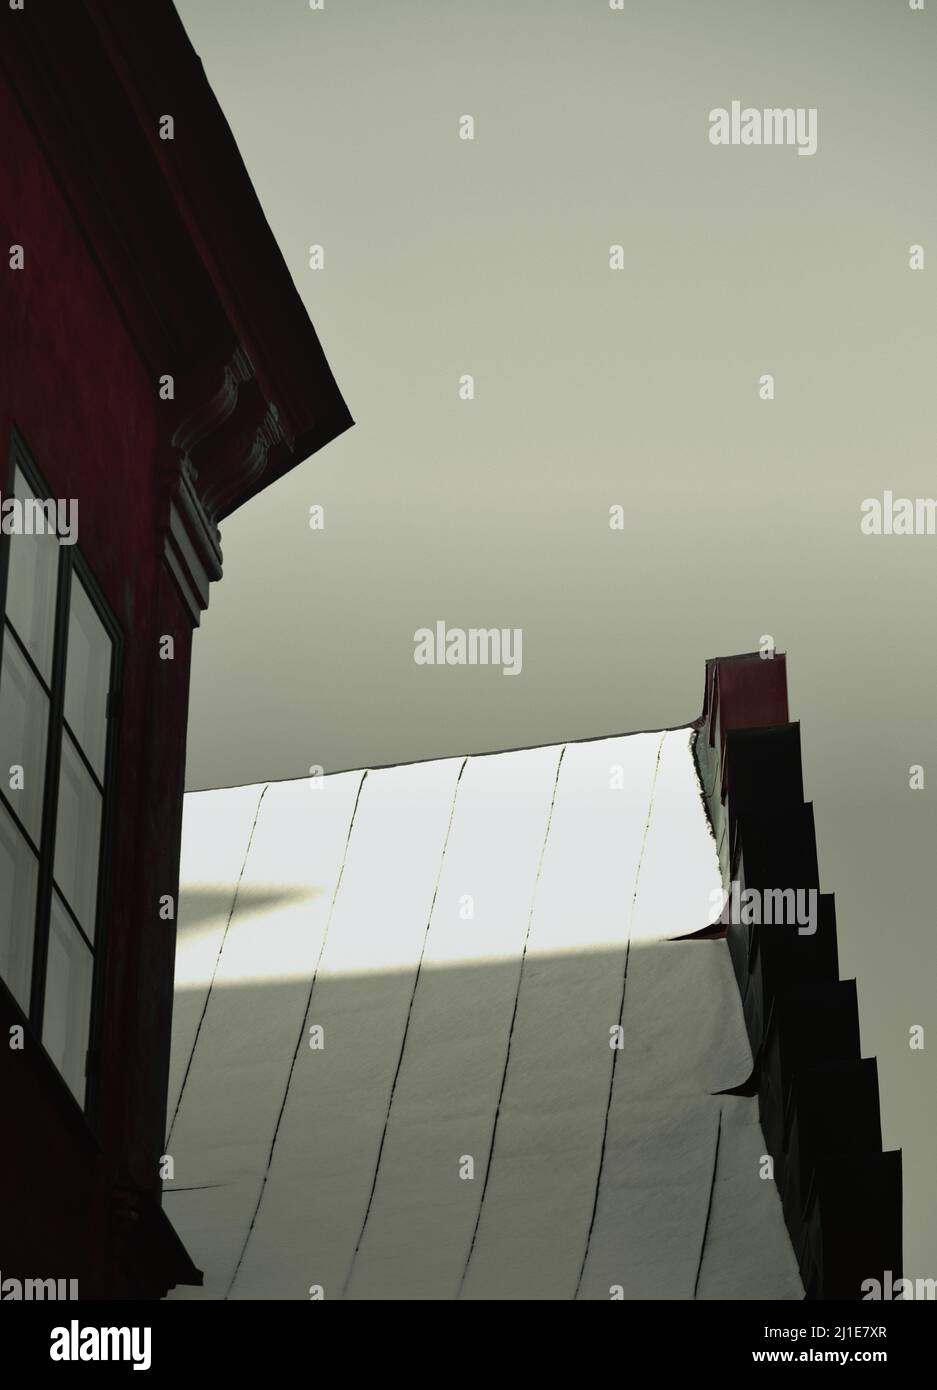 Schneebedecktes, sonnenbeschienes Dach und Fenster im Schatten, Gamla Stan, Stockholm, Schweden. Konzept von Geheimnis, Entführung, Gefangenschaft Stockfoto